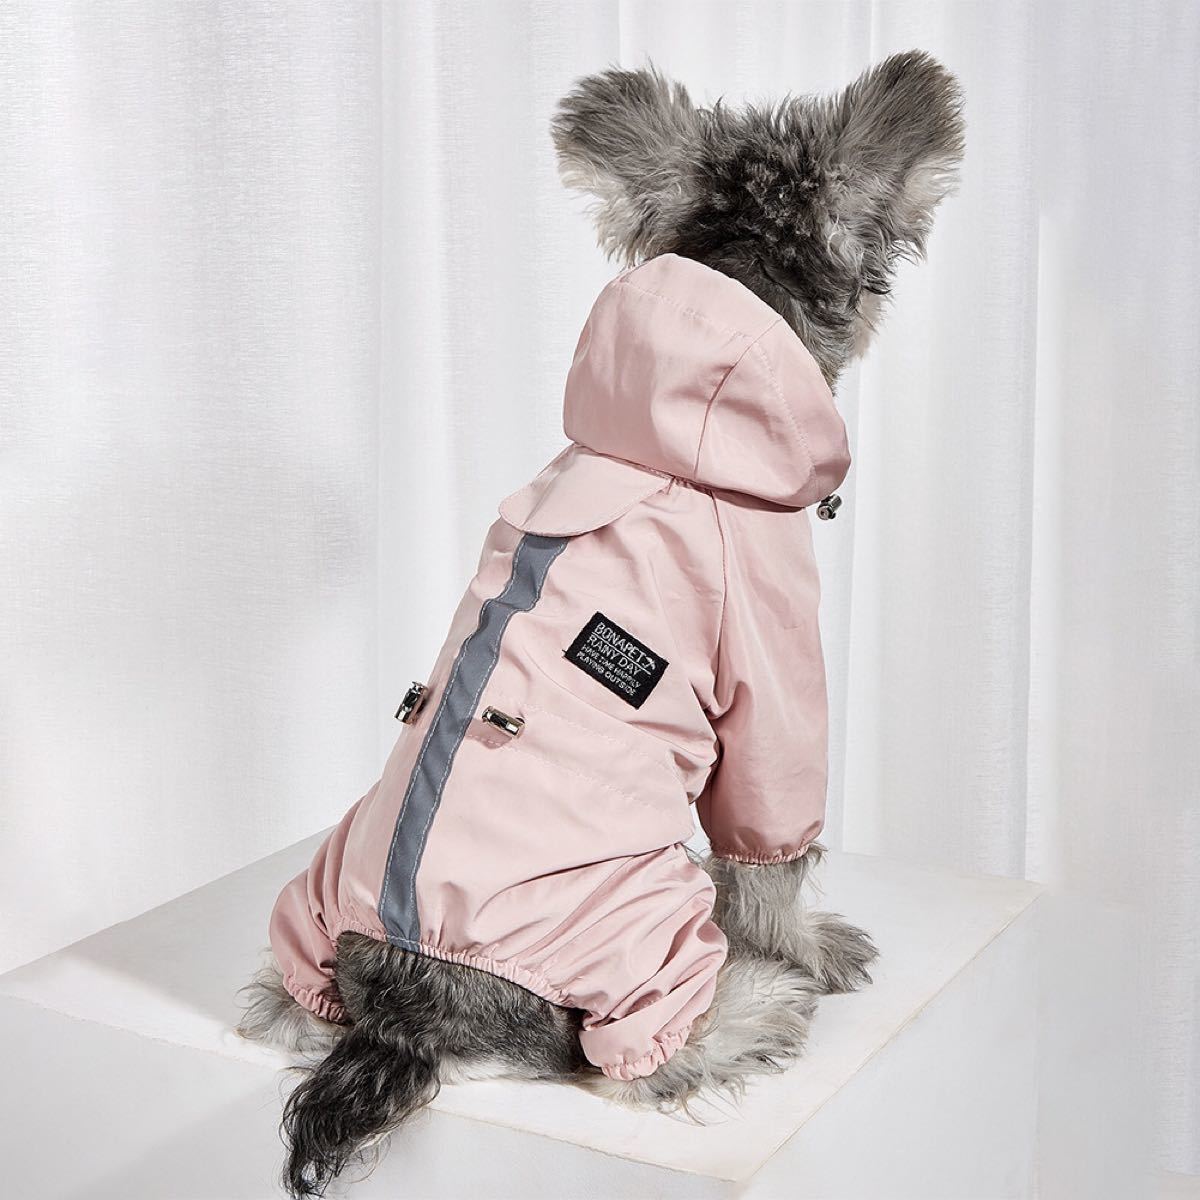 犬用 レインコート ポンチョ 防水犬の服 ペット用品 可愛い(ブルー、ピンク) ペット服 ドッグウェア 犬の服